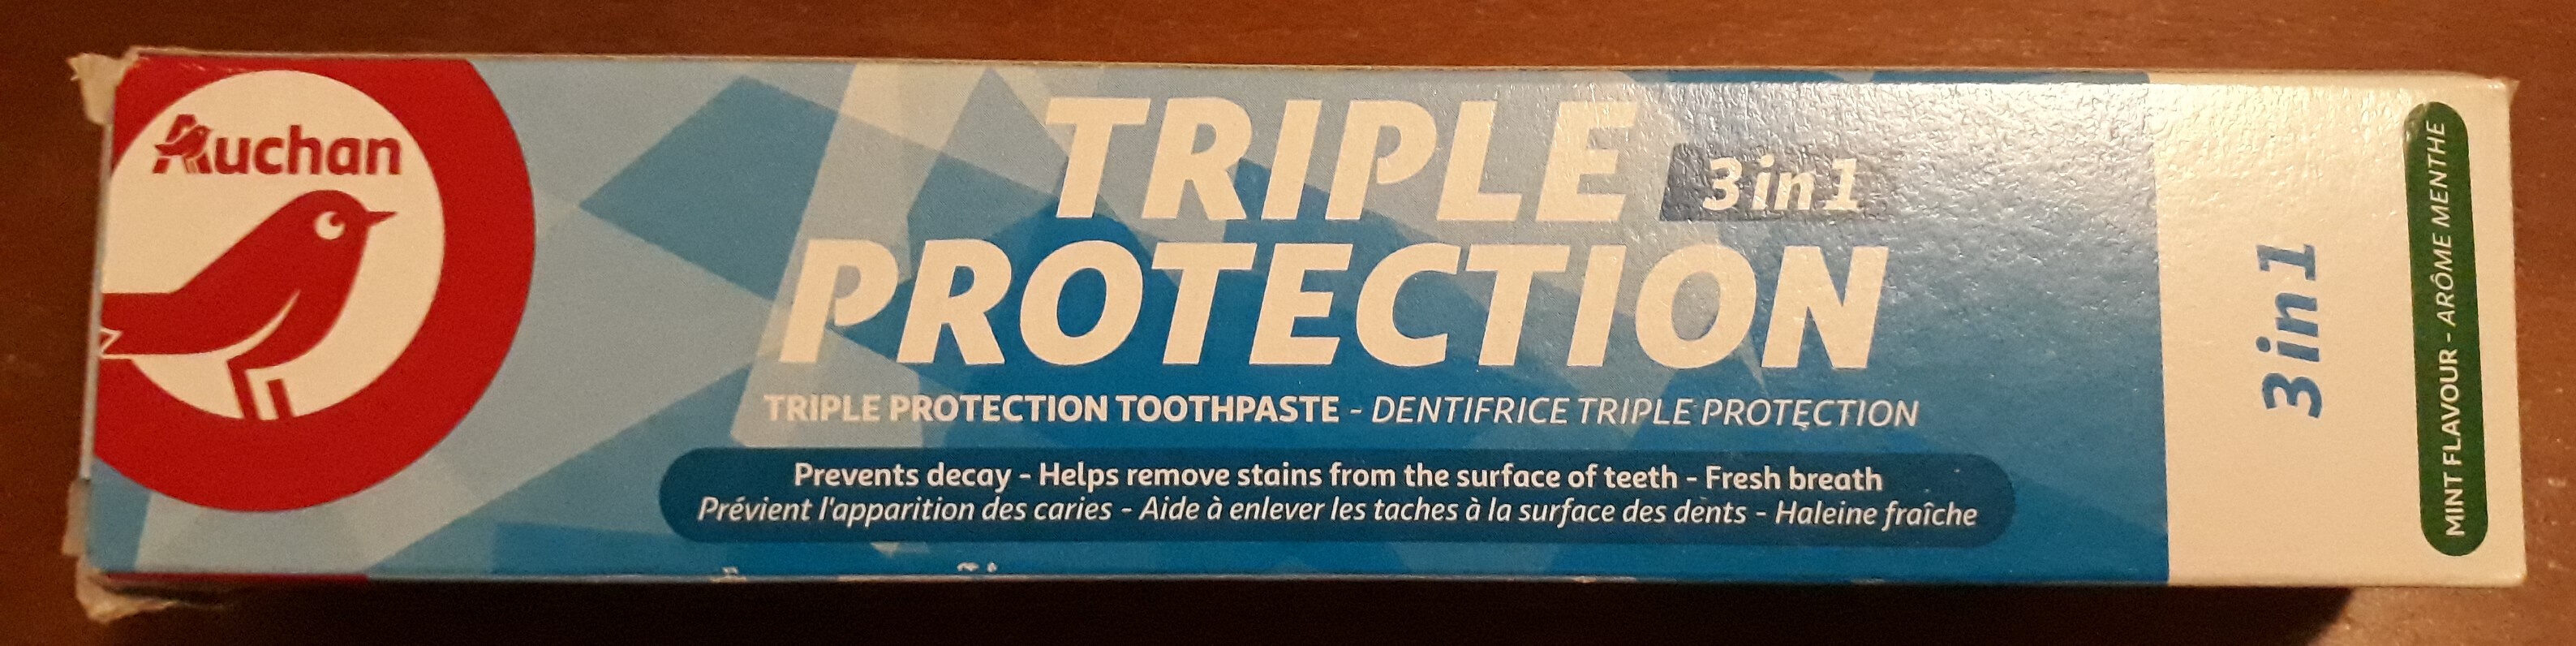 Dentifrice triple protection 3-en-1 à la menthe - Produit - fr